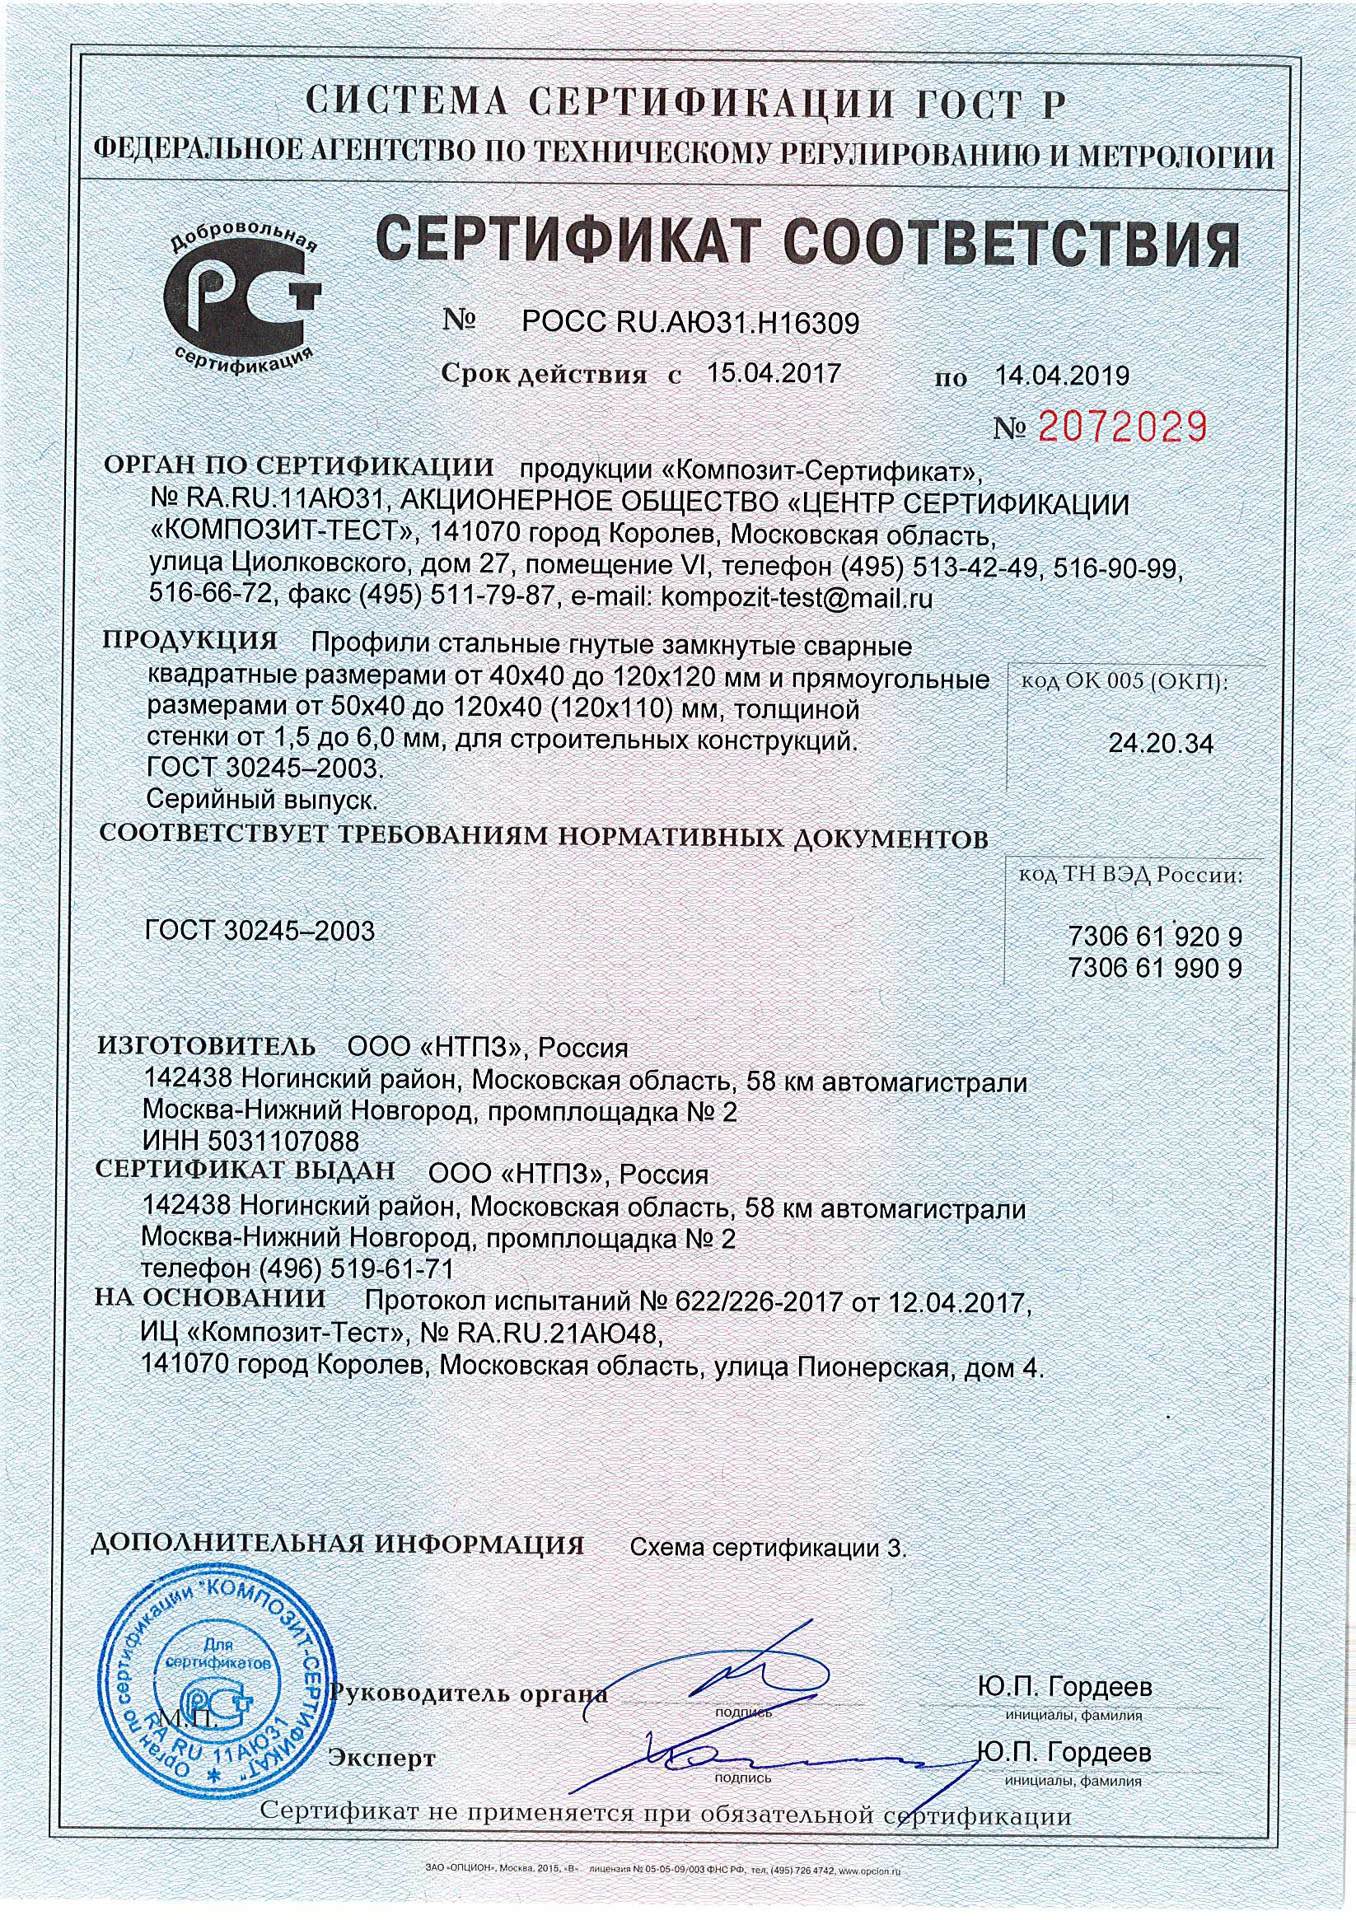 Сертификат соответствия квадратных труб ГОСТ 30245 производства НТПЗ